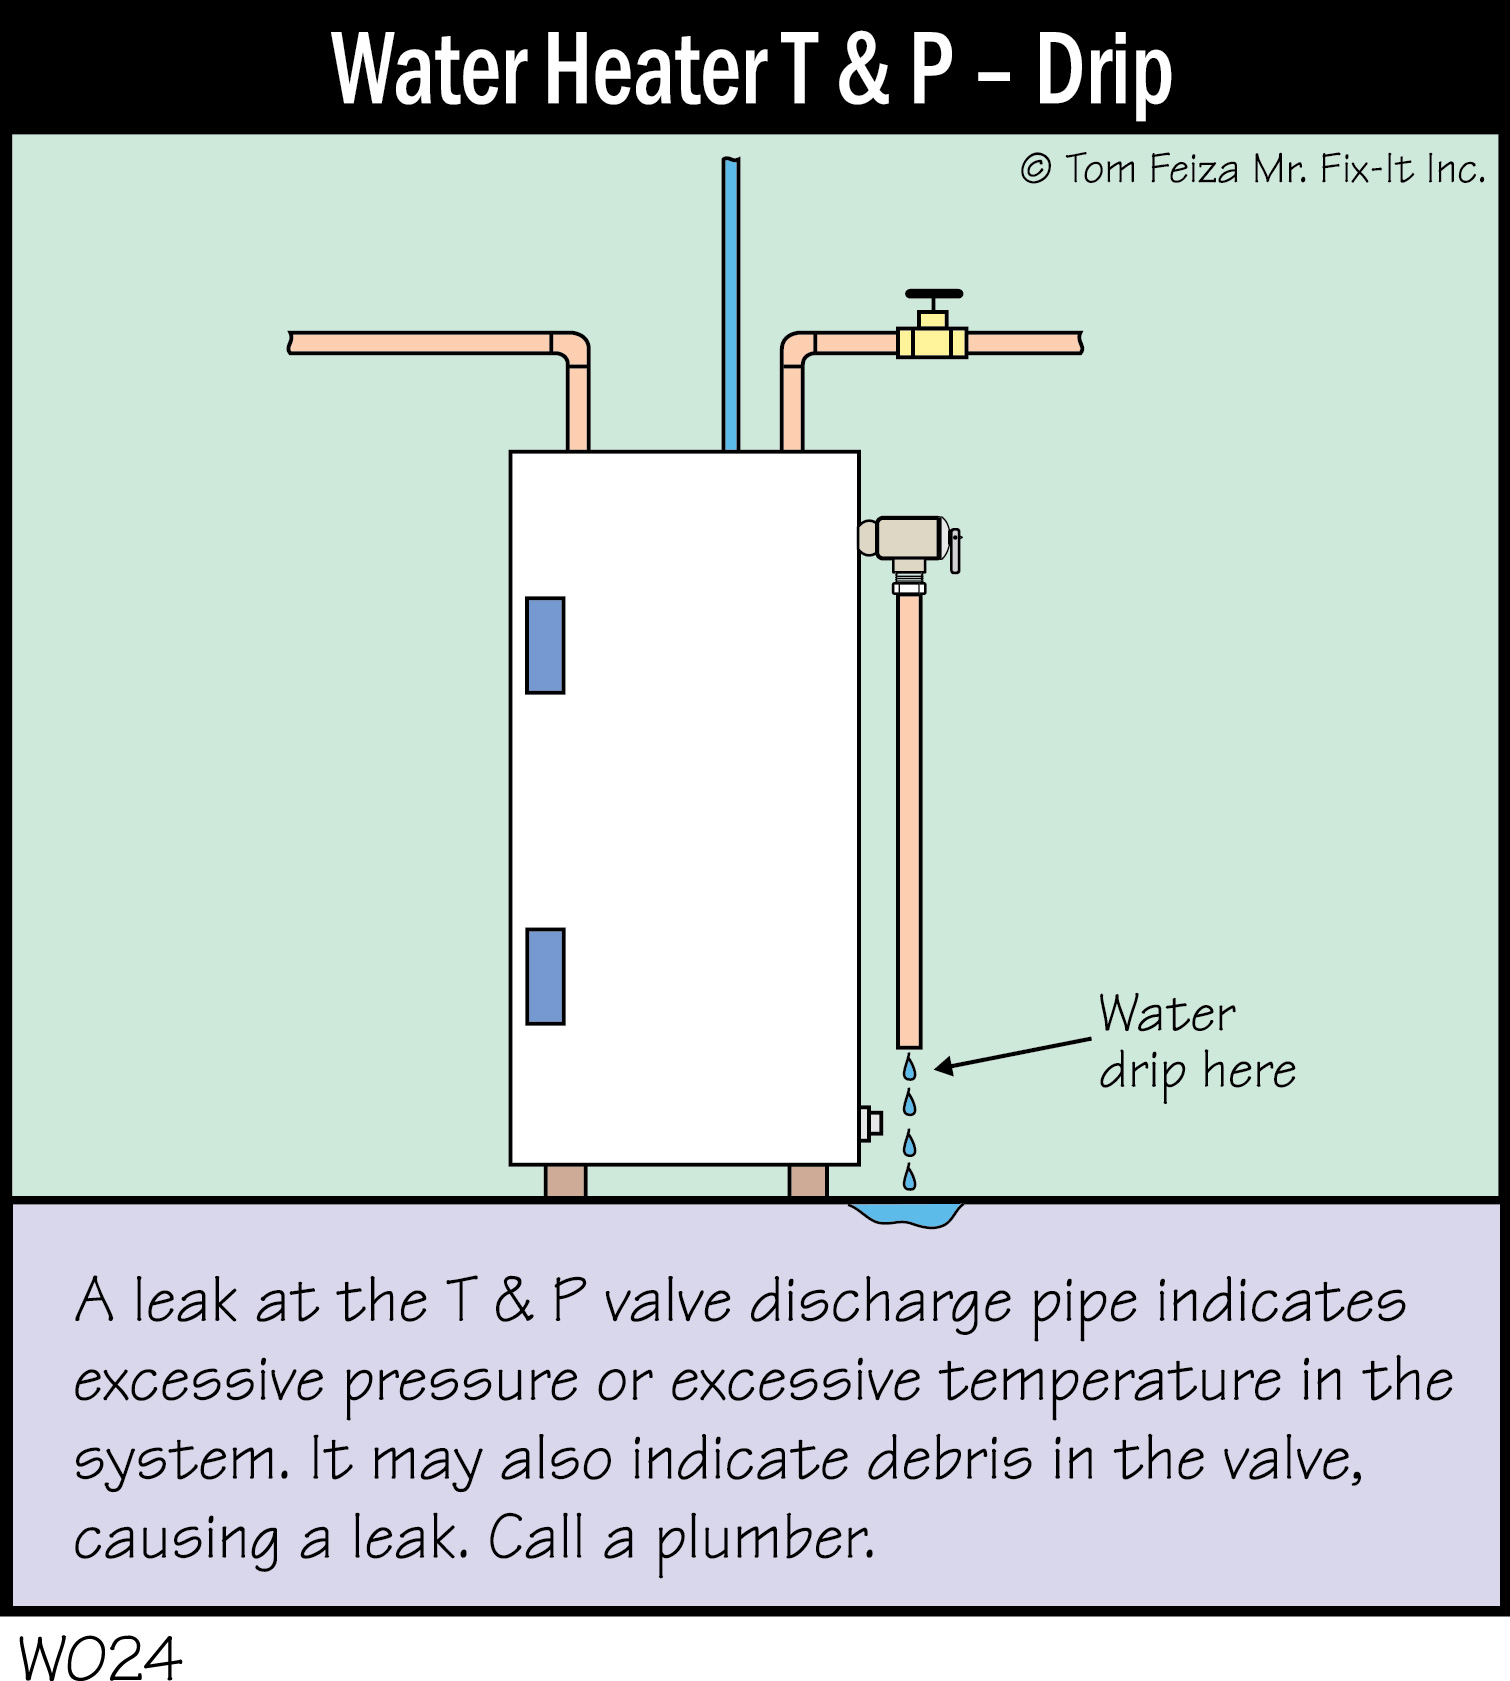 W024C - Water Heater T & P - Drip_300dpi